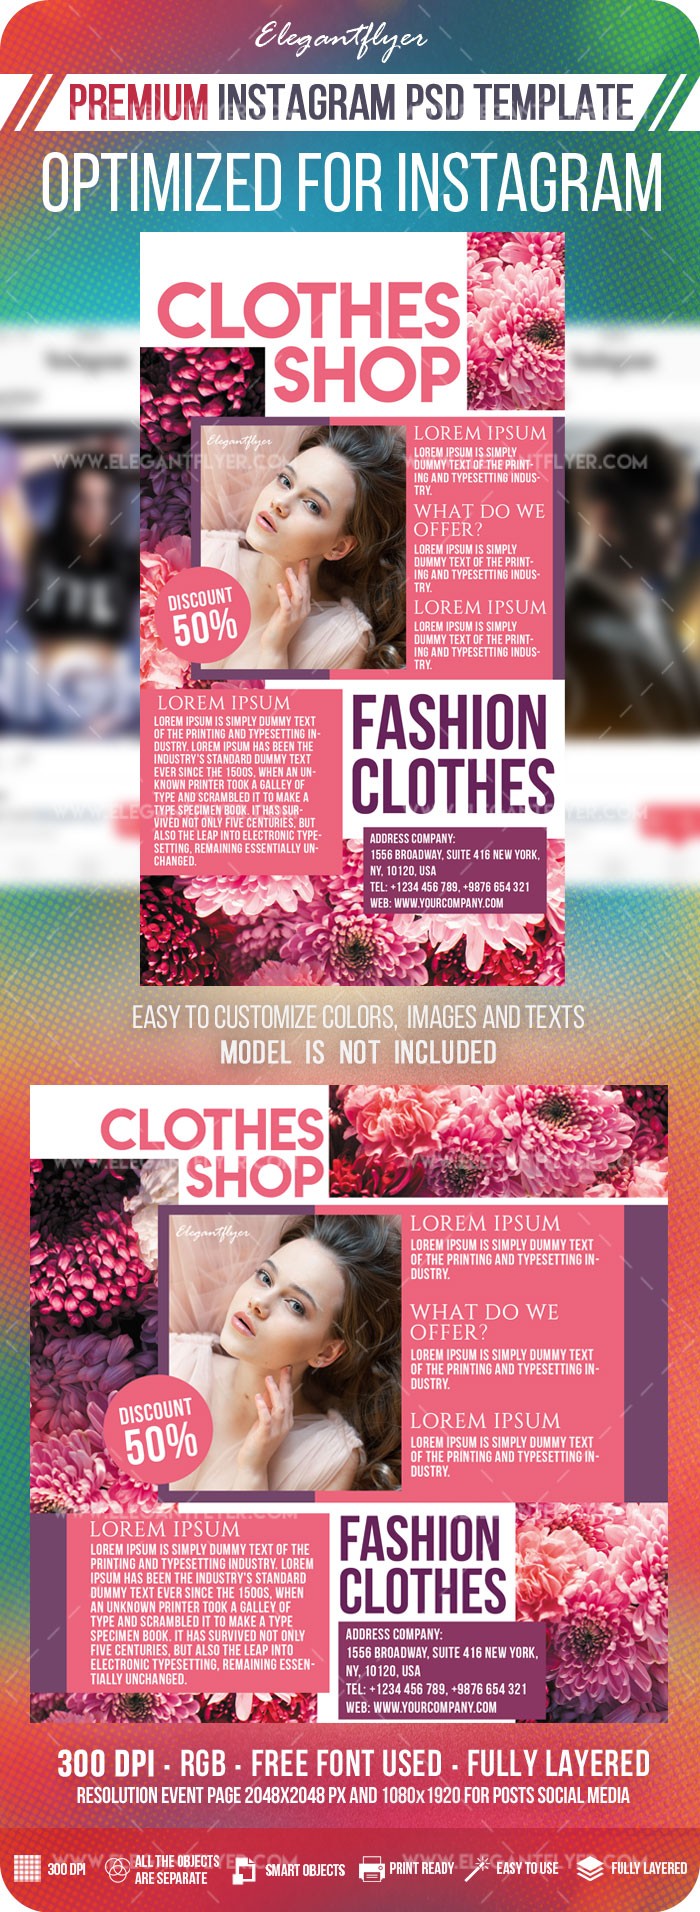 Boutique de vêtements Instagram by ElegantFlyer